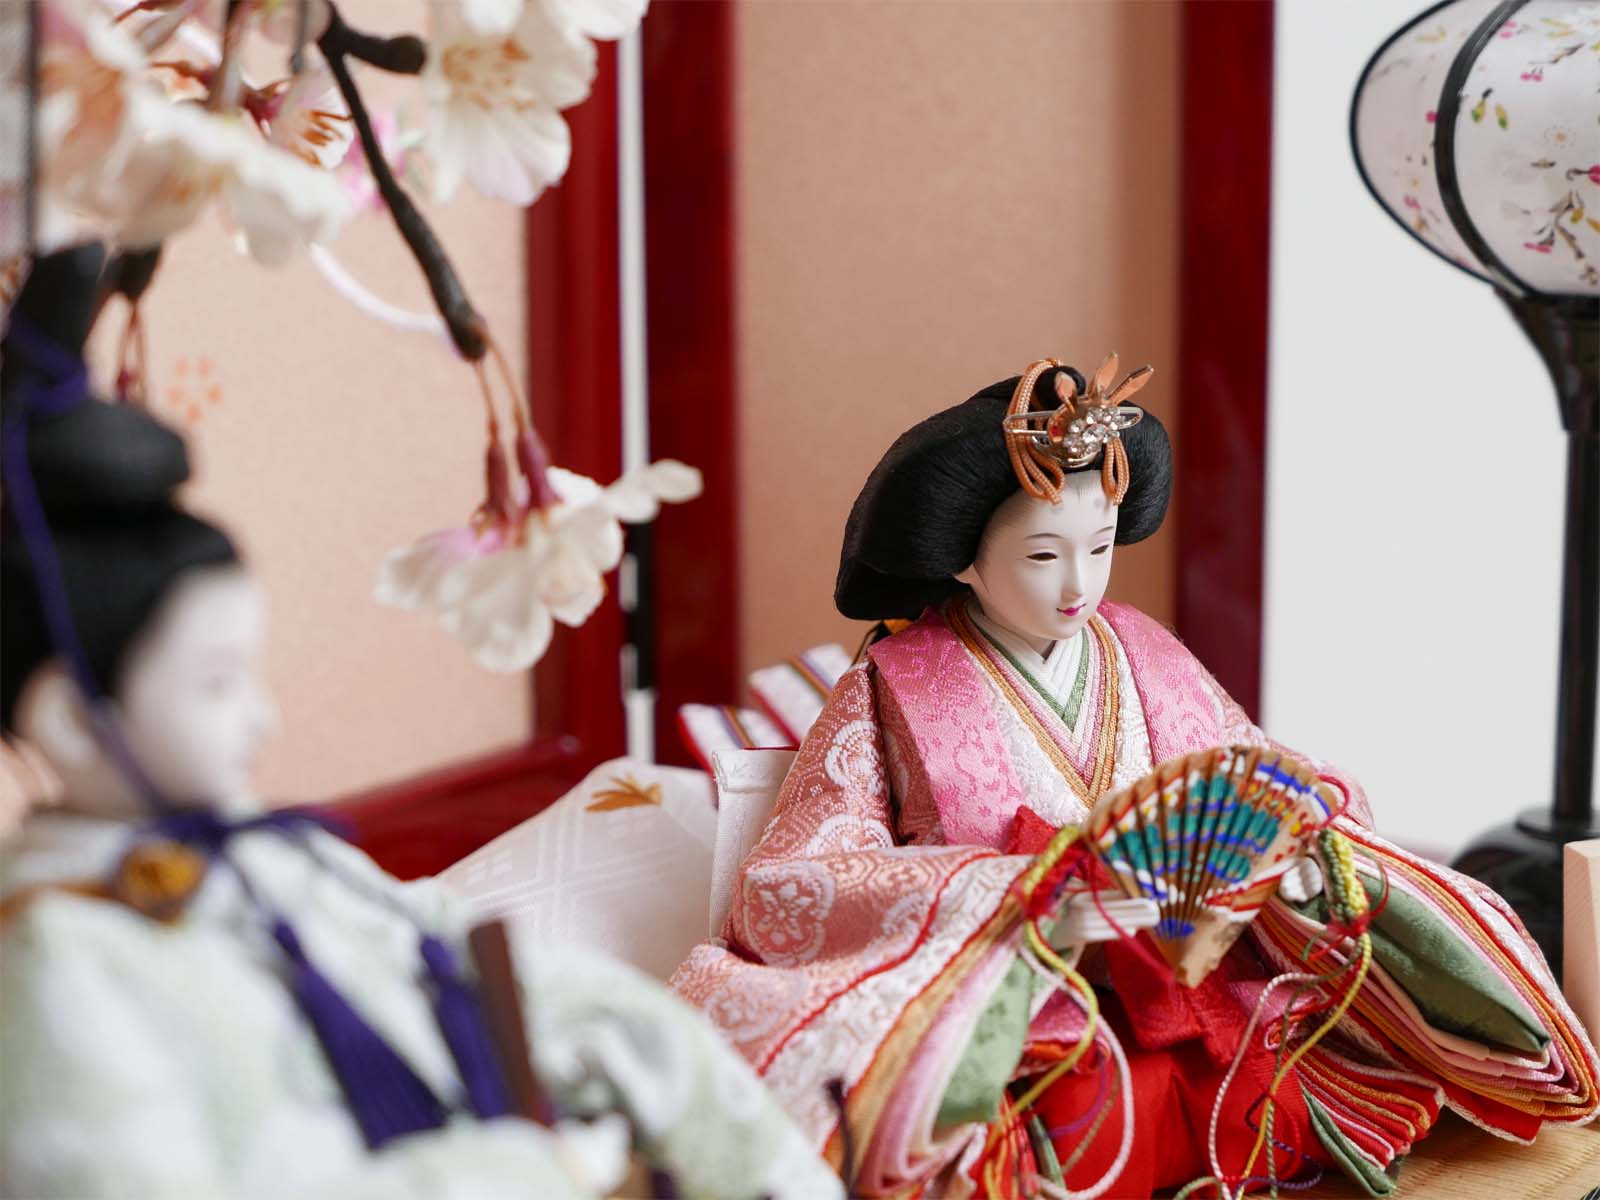 ピンクの有職衣装雛人形桜リボン赤塗り収納飾り(姫名前札付)